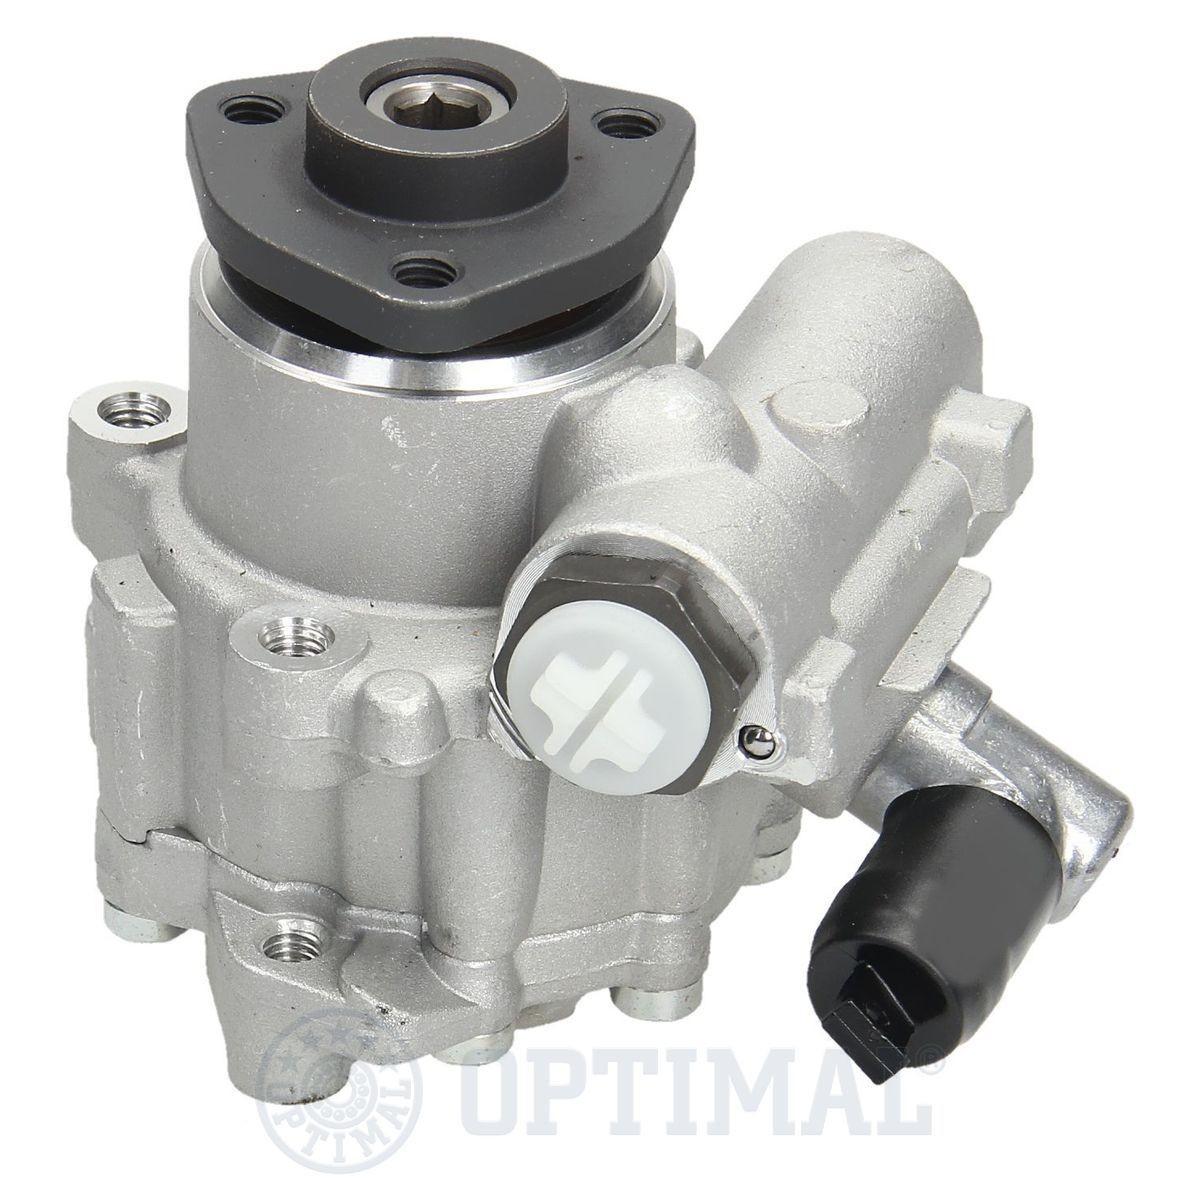 OPTIMAL HP-898 Power steering pump A003 466 06 01